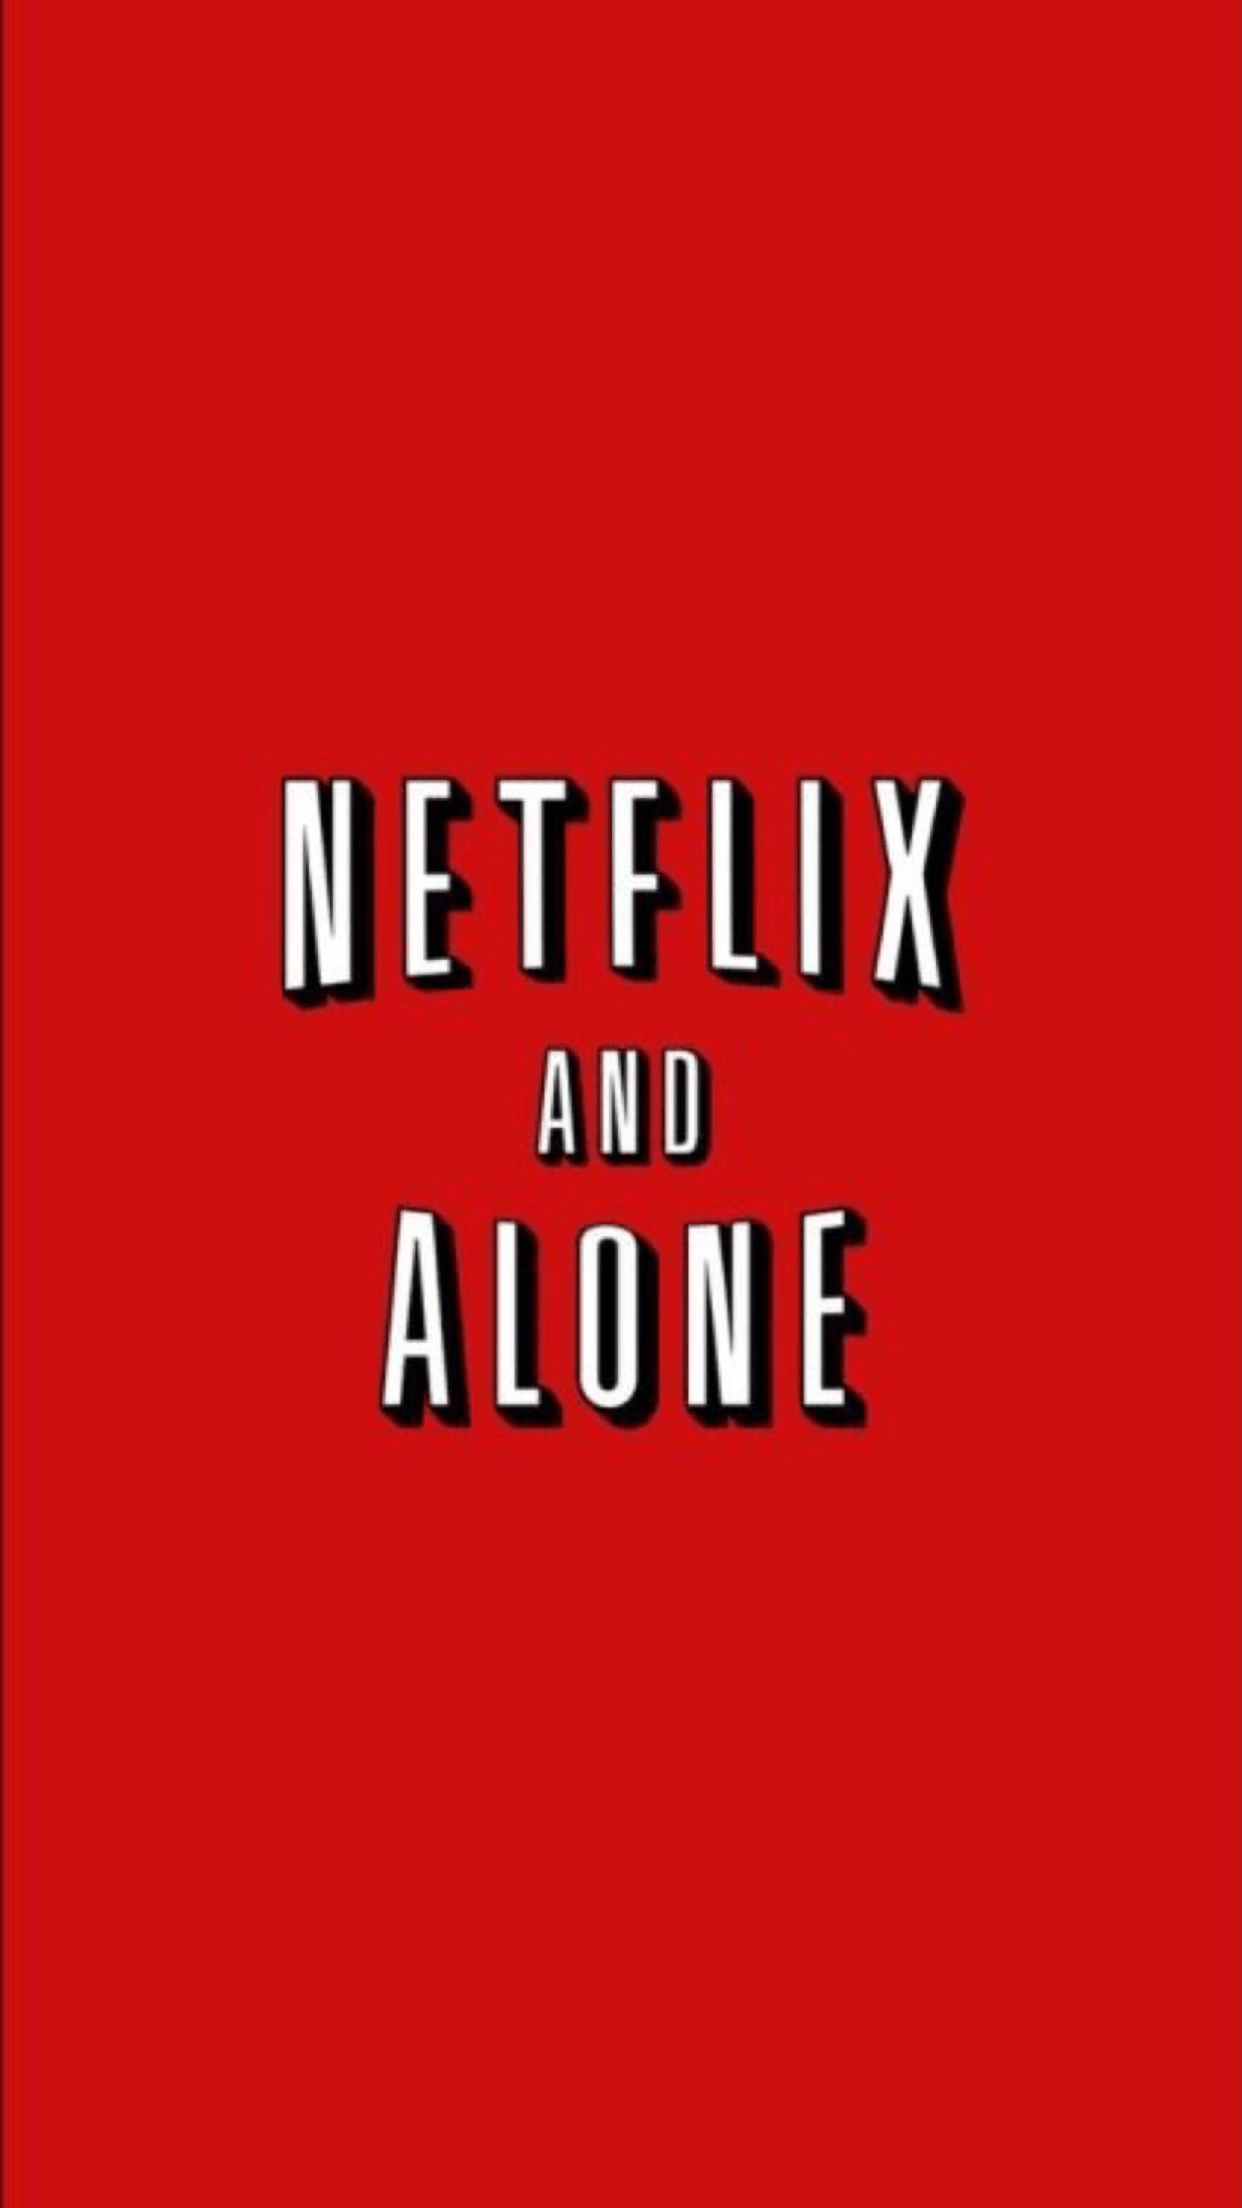 Netflix and alone - Netflix